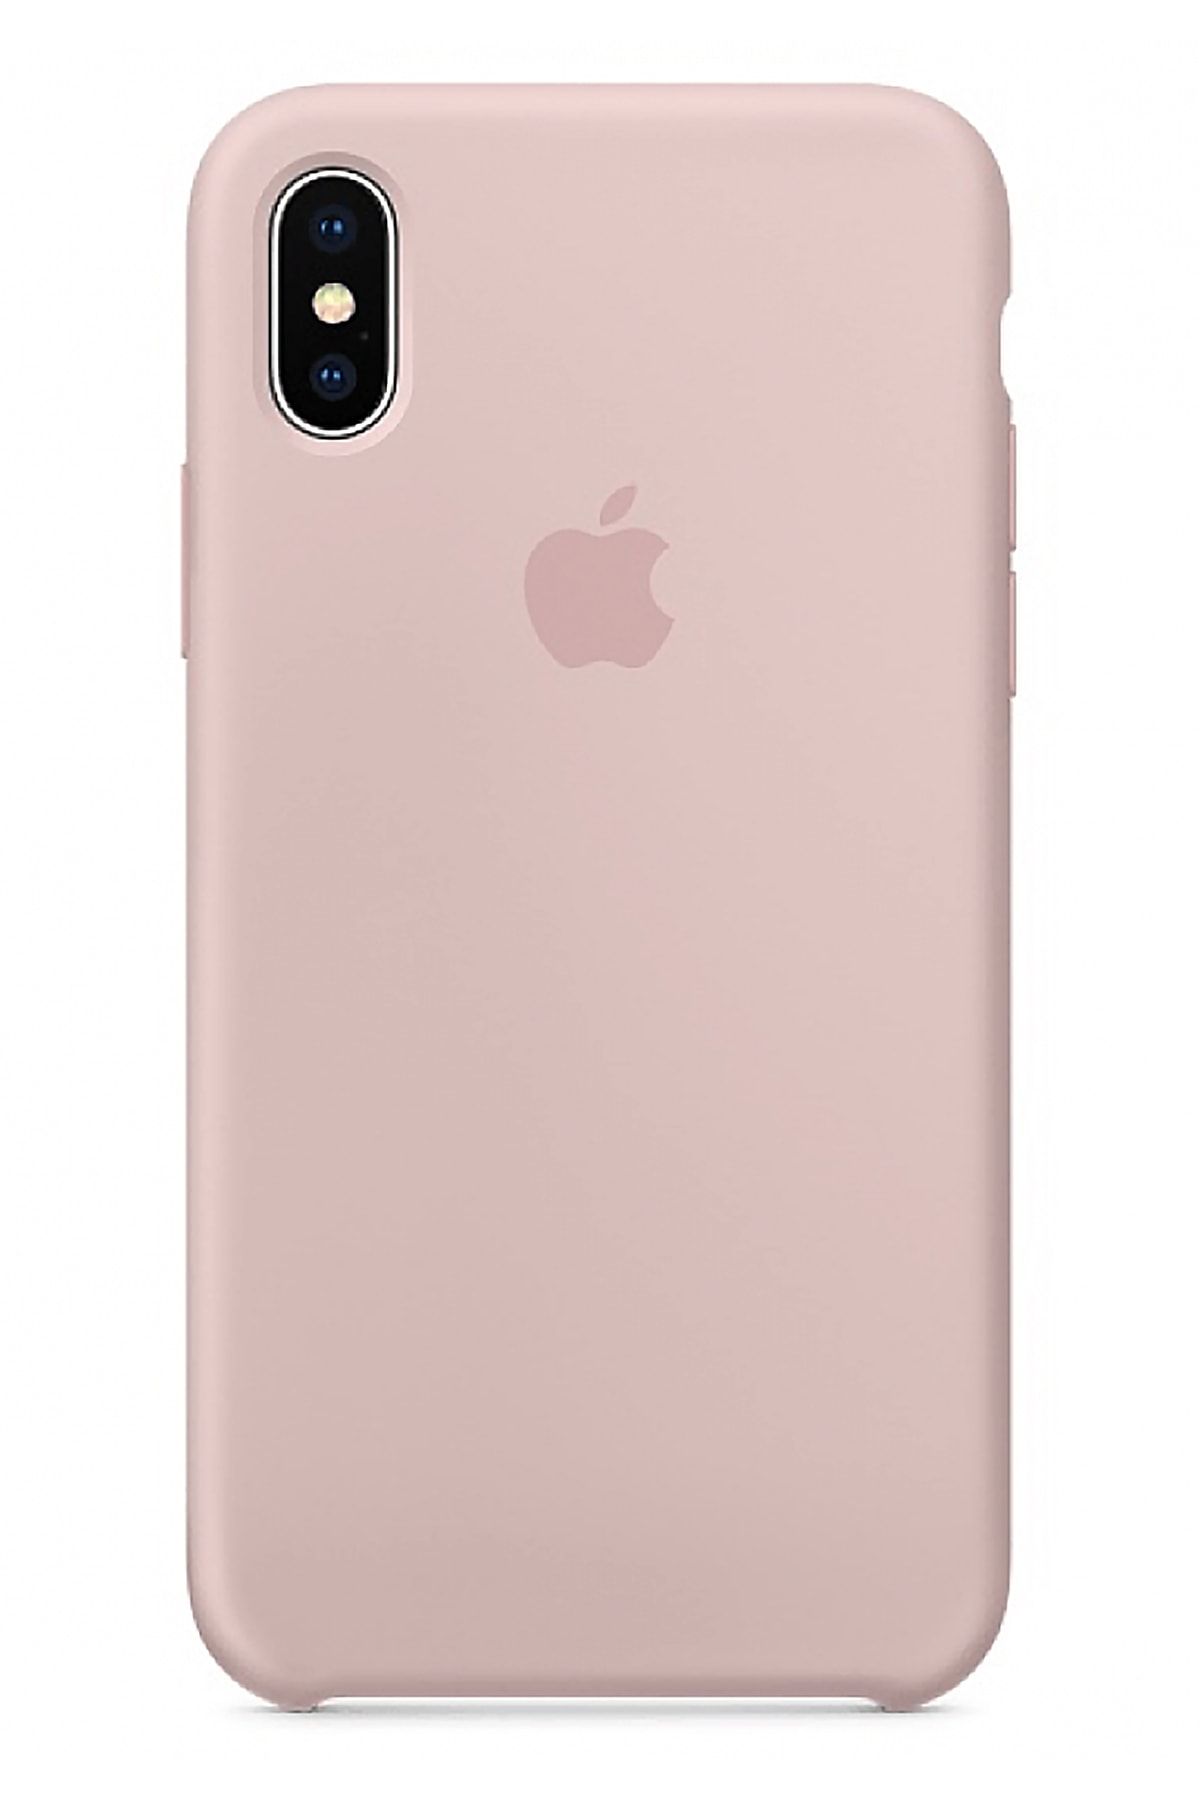 Ebotek Apple Iphone X Silikon Kılıf Pudra Pembe